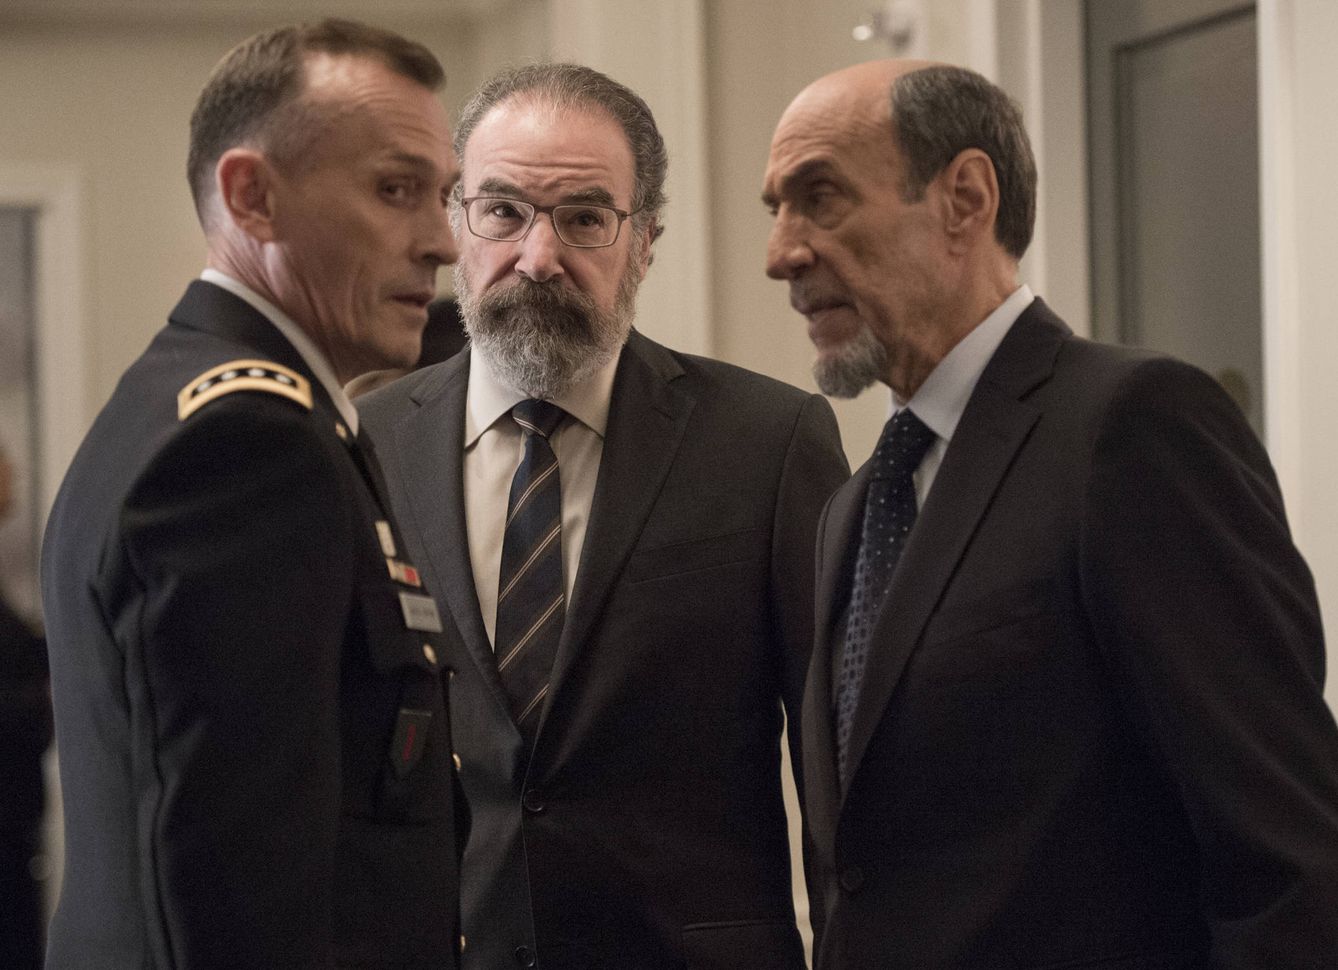 Saúl Berenson y Dar Adal conversan con los altos mandos militares en la sexta entrega de 'Homeland'